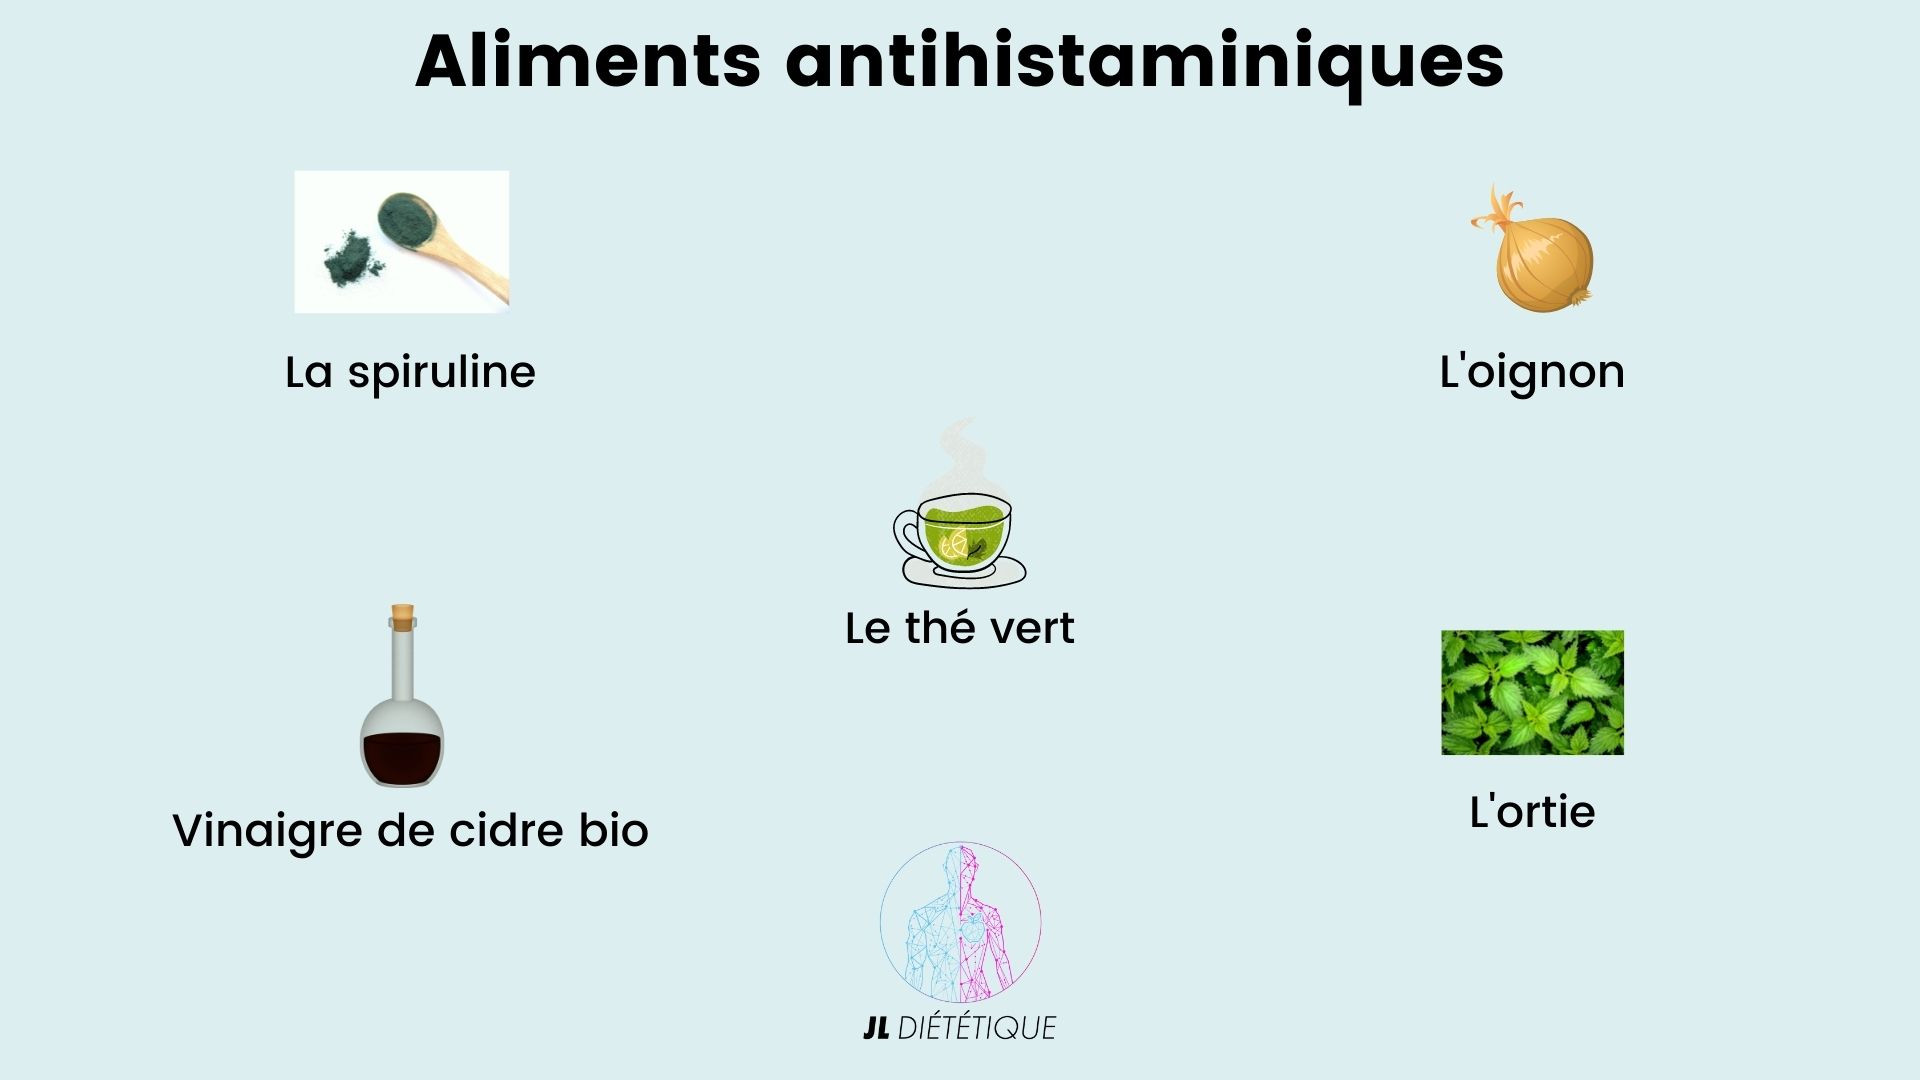 Les aliments antihistaminique